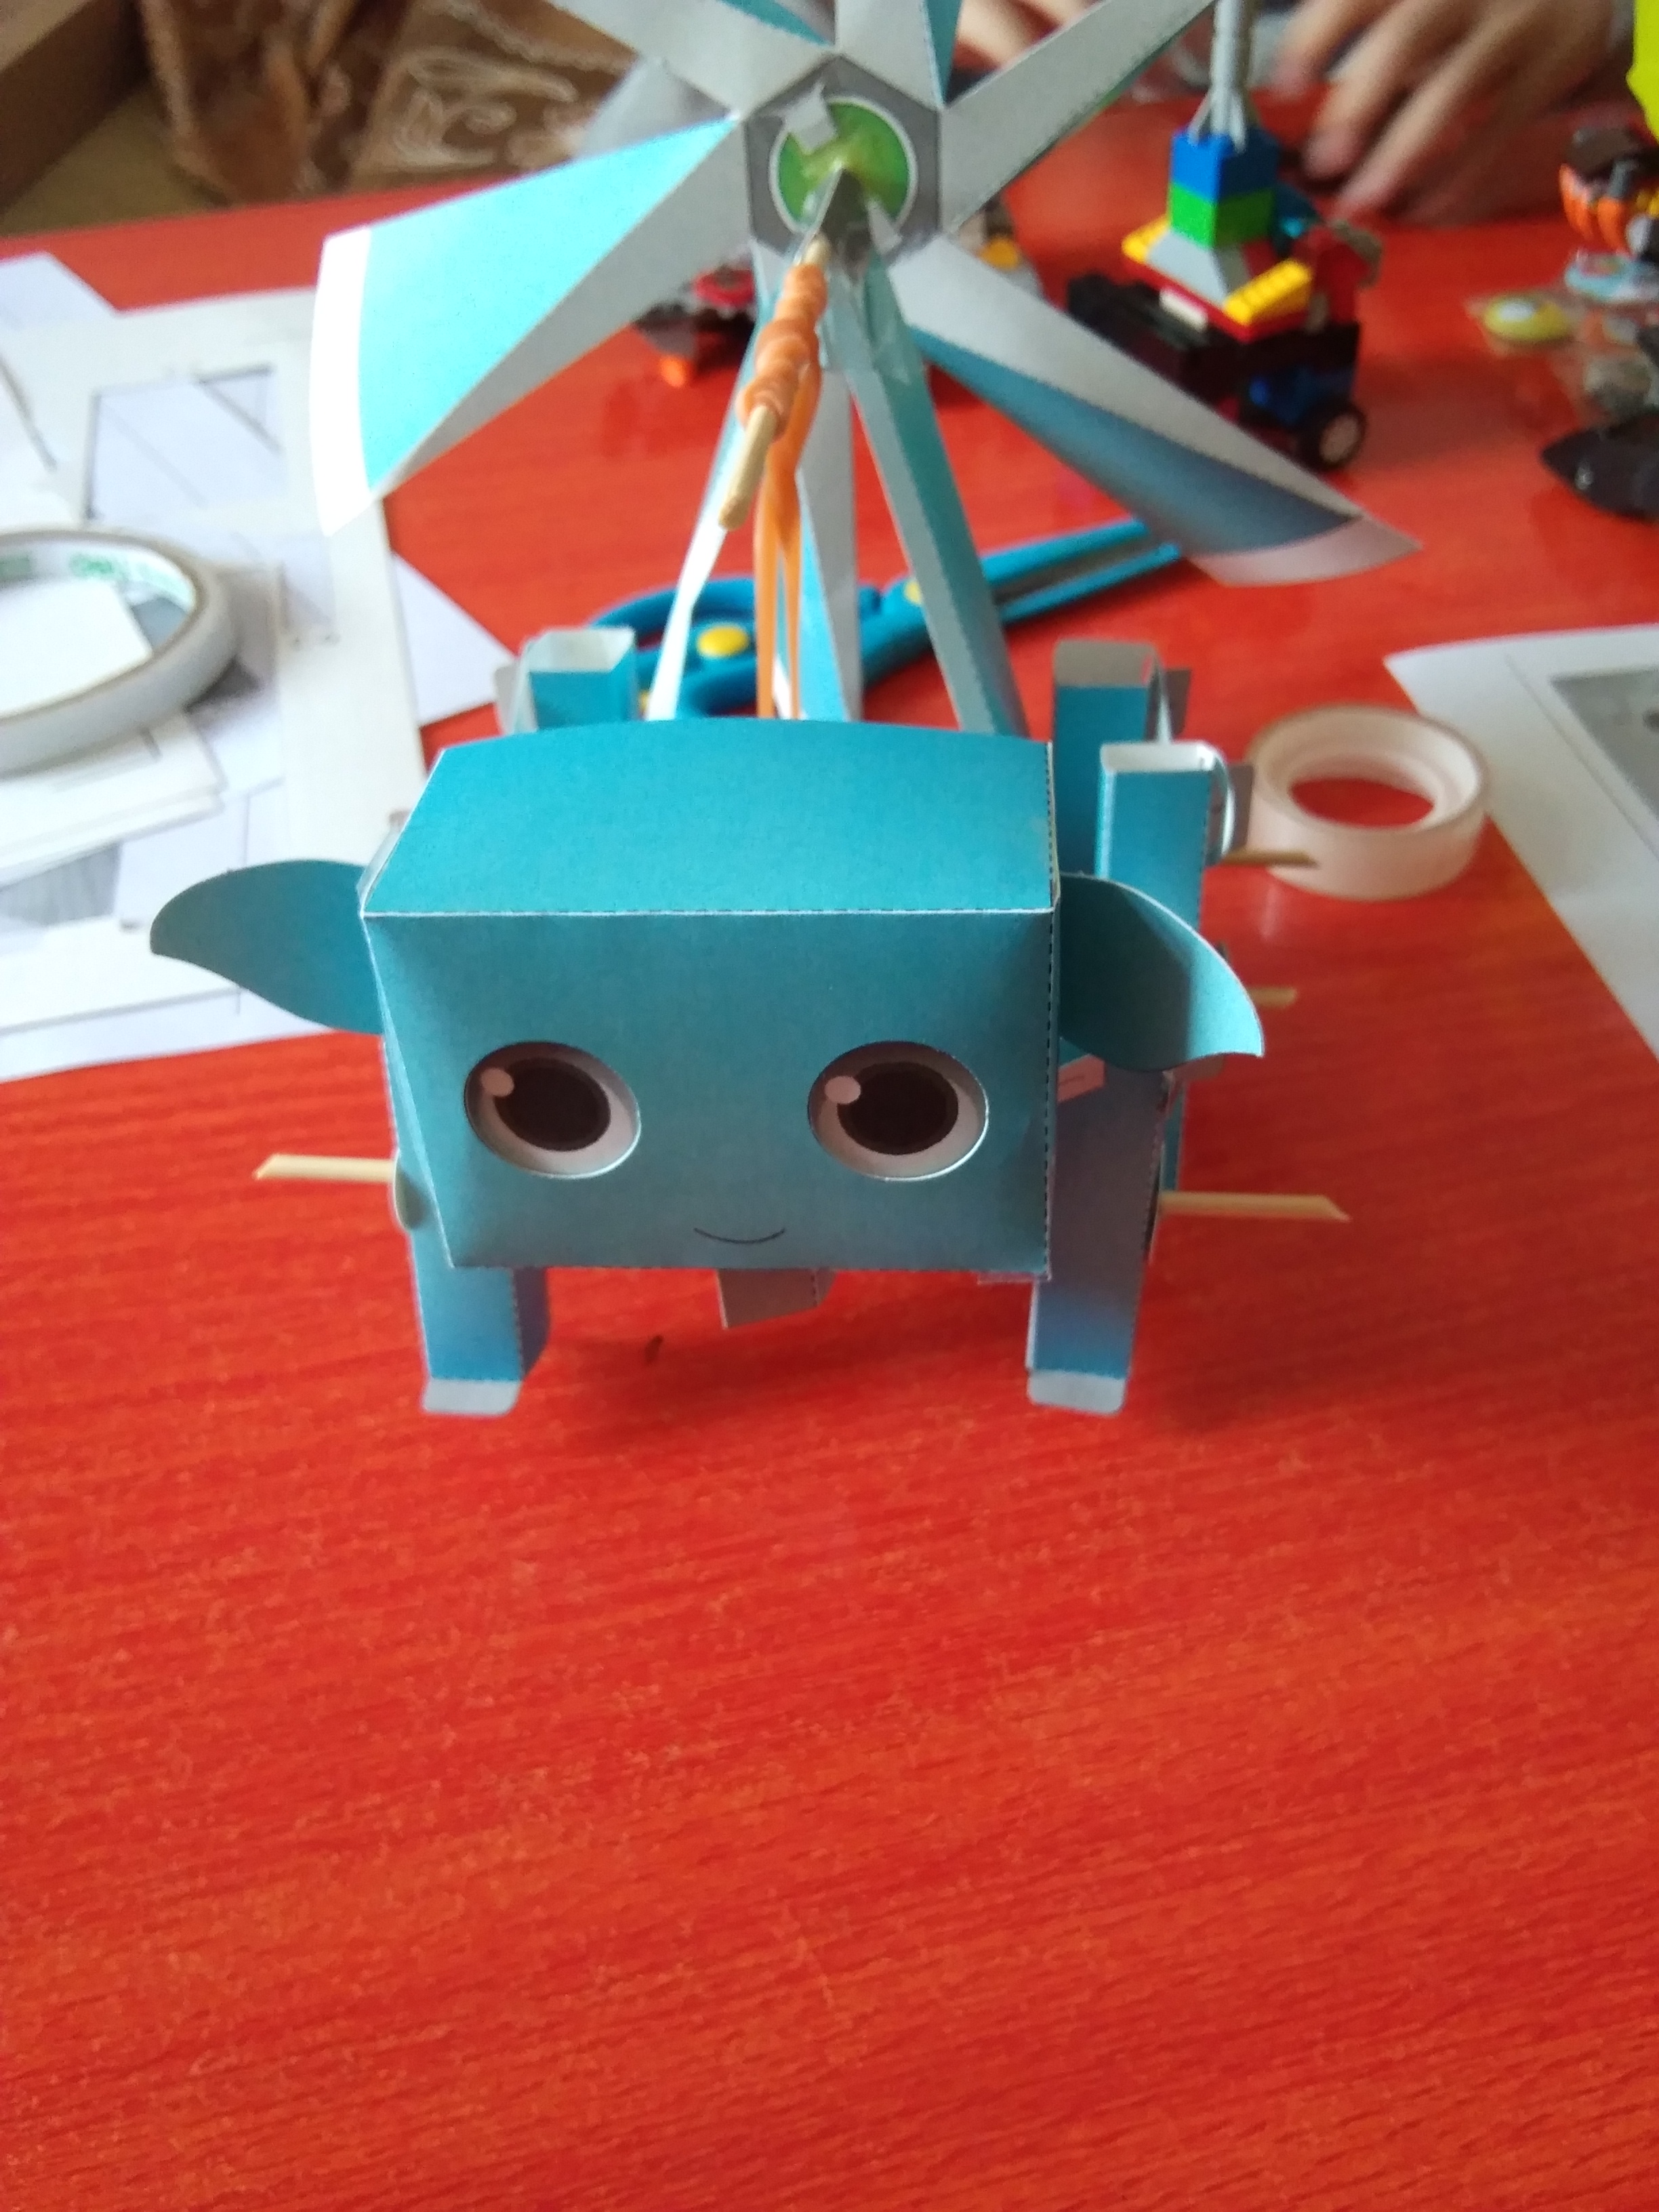 幼儿园自制纸箱机器人-图库-五毛网